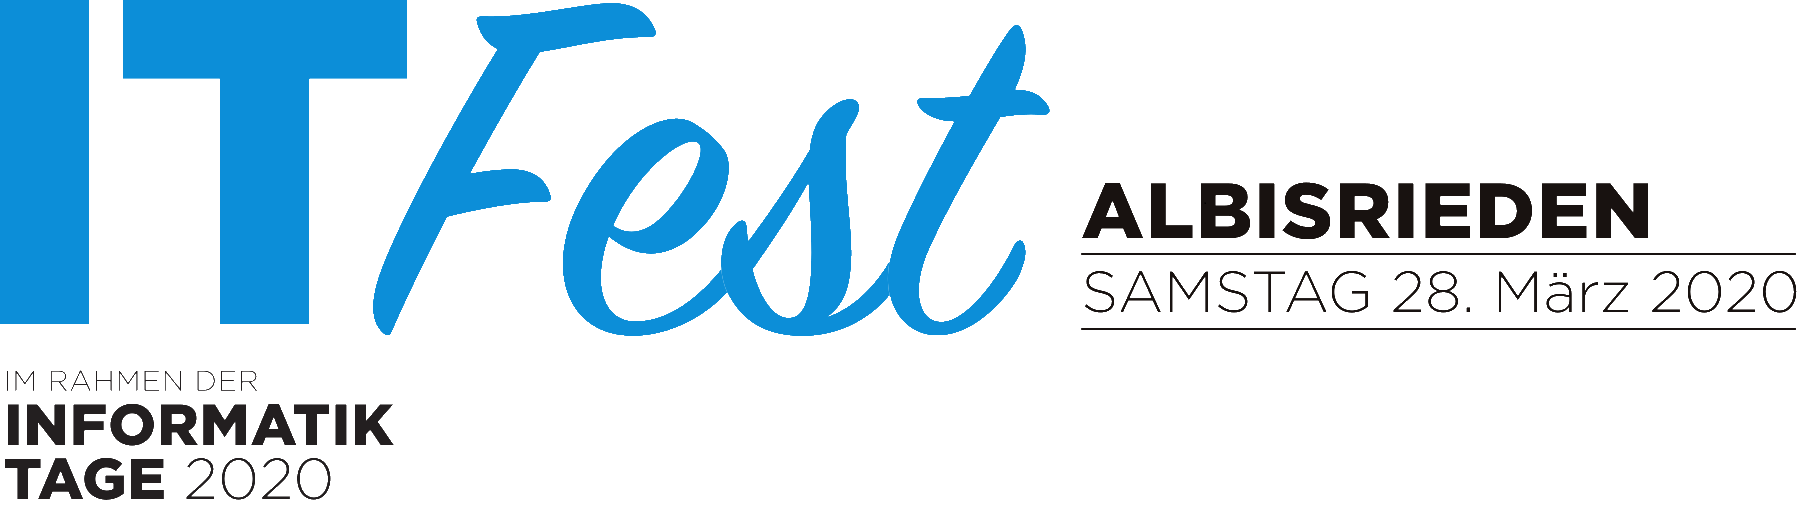 Das Logo vom IT Fest